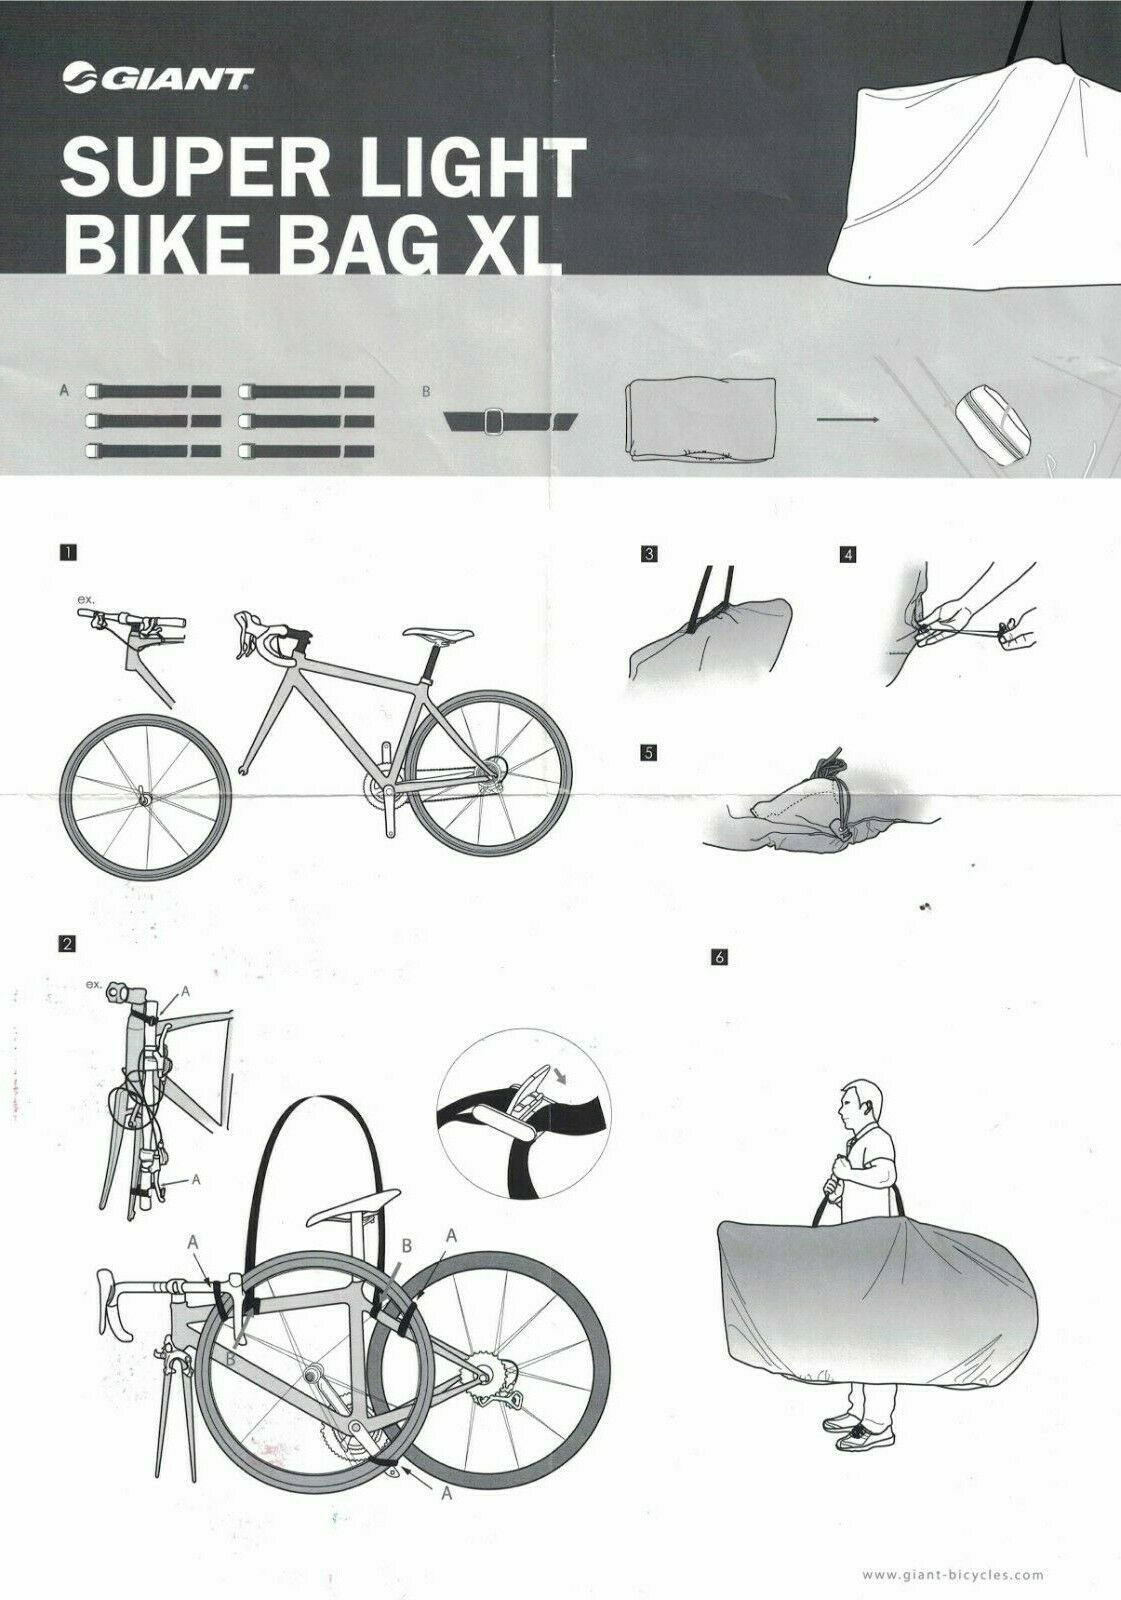 کیف ساک مخصوص حمل دوچرخه جاینت فوق سبک سایز ایکس لارج کد 631300008 Giant Super-light Weight Bicycle Bag XL